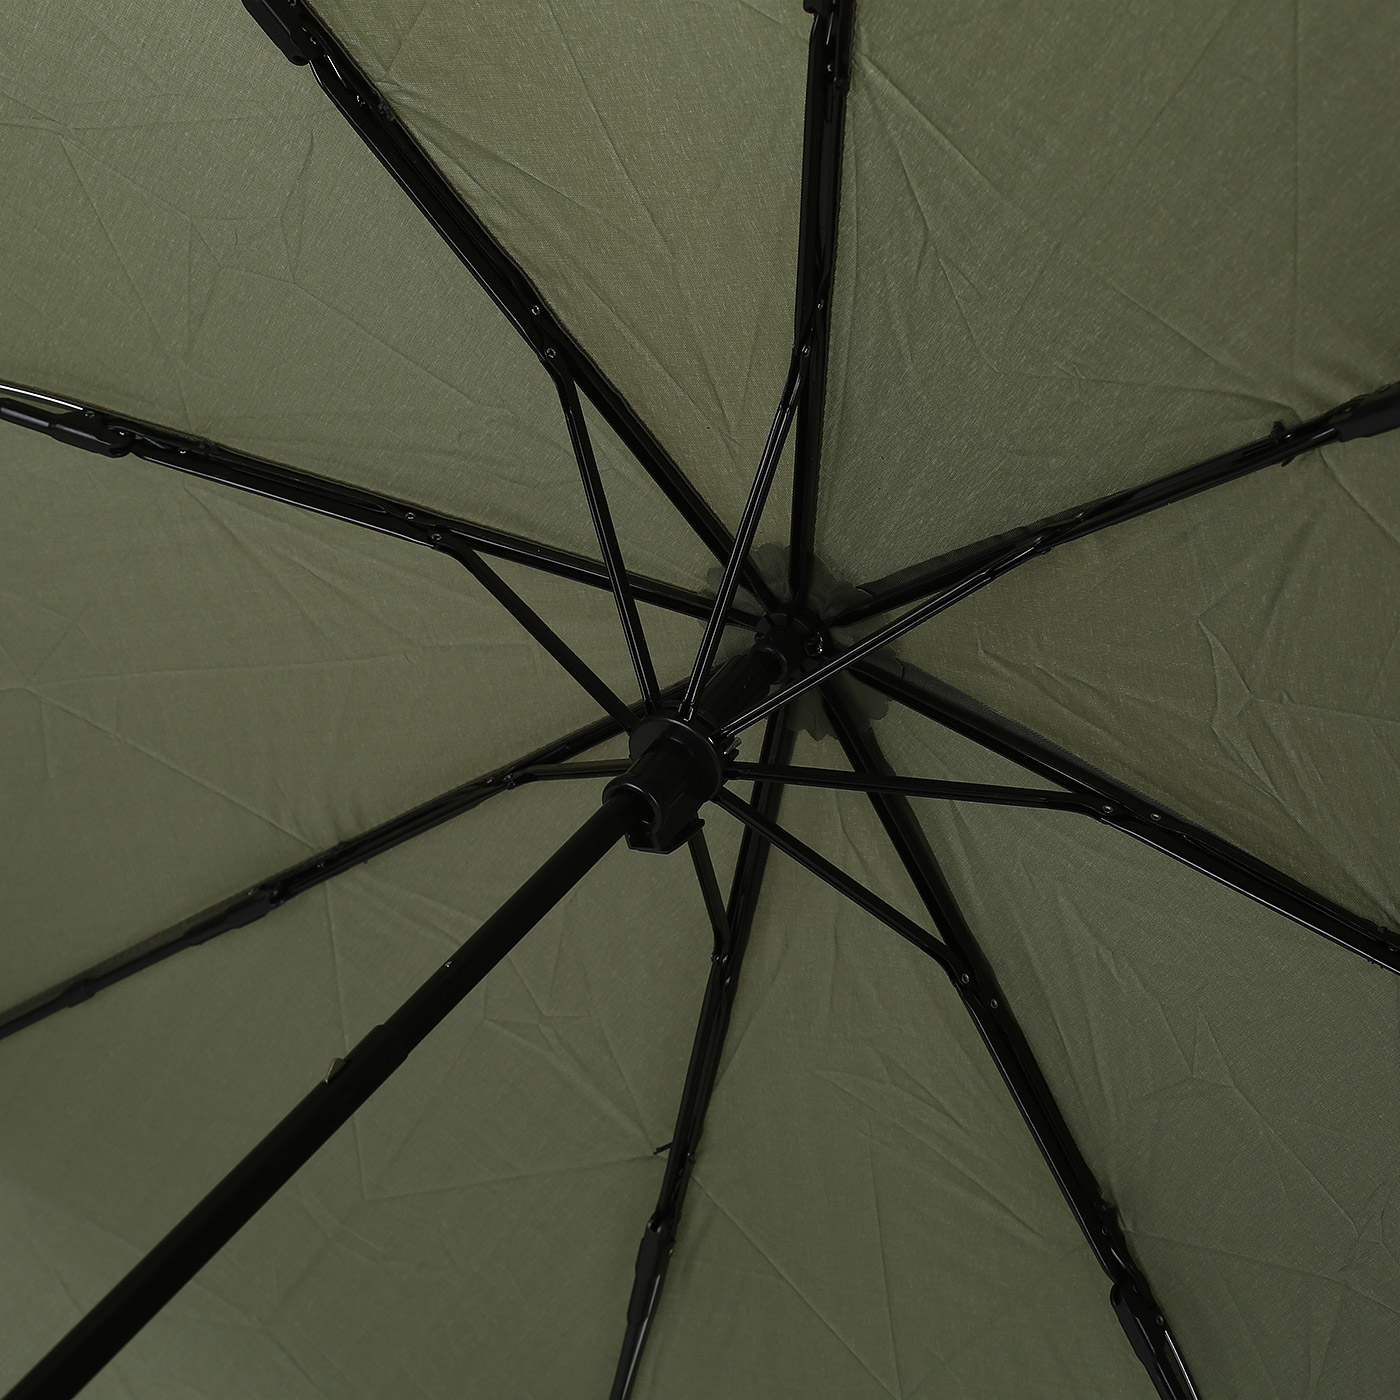 Складной зонт Piquadro 